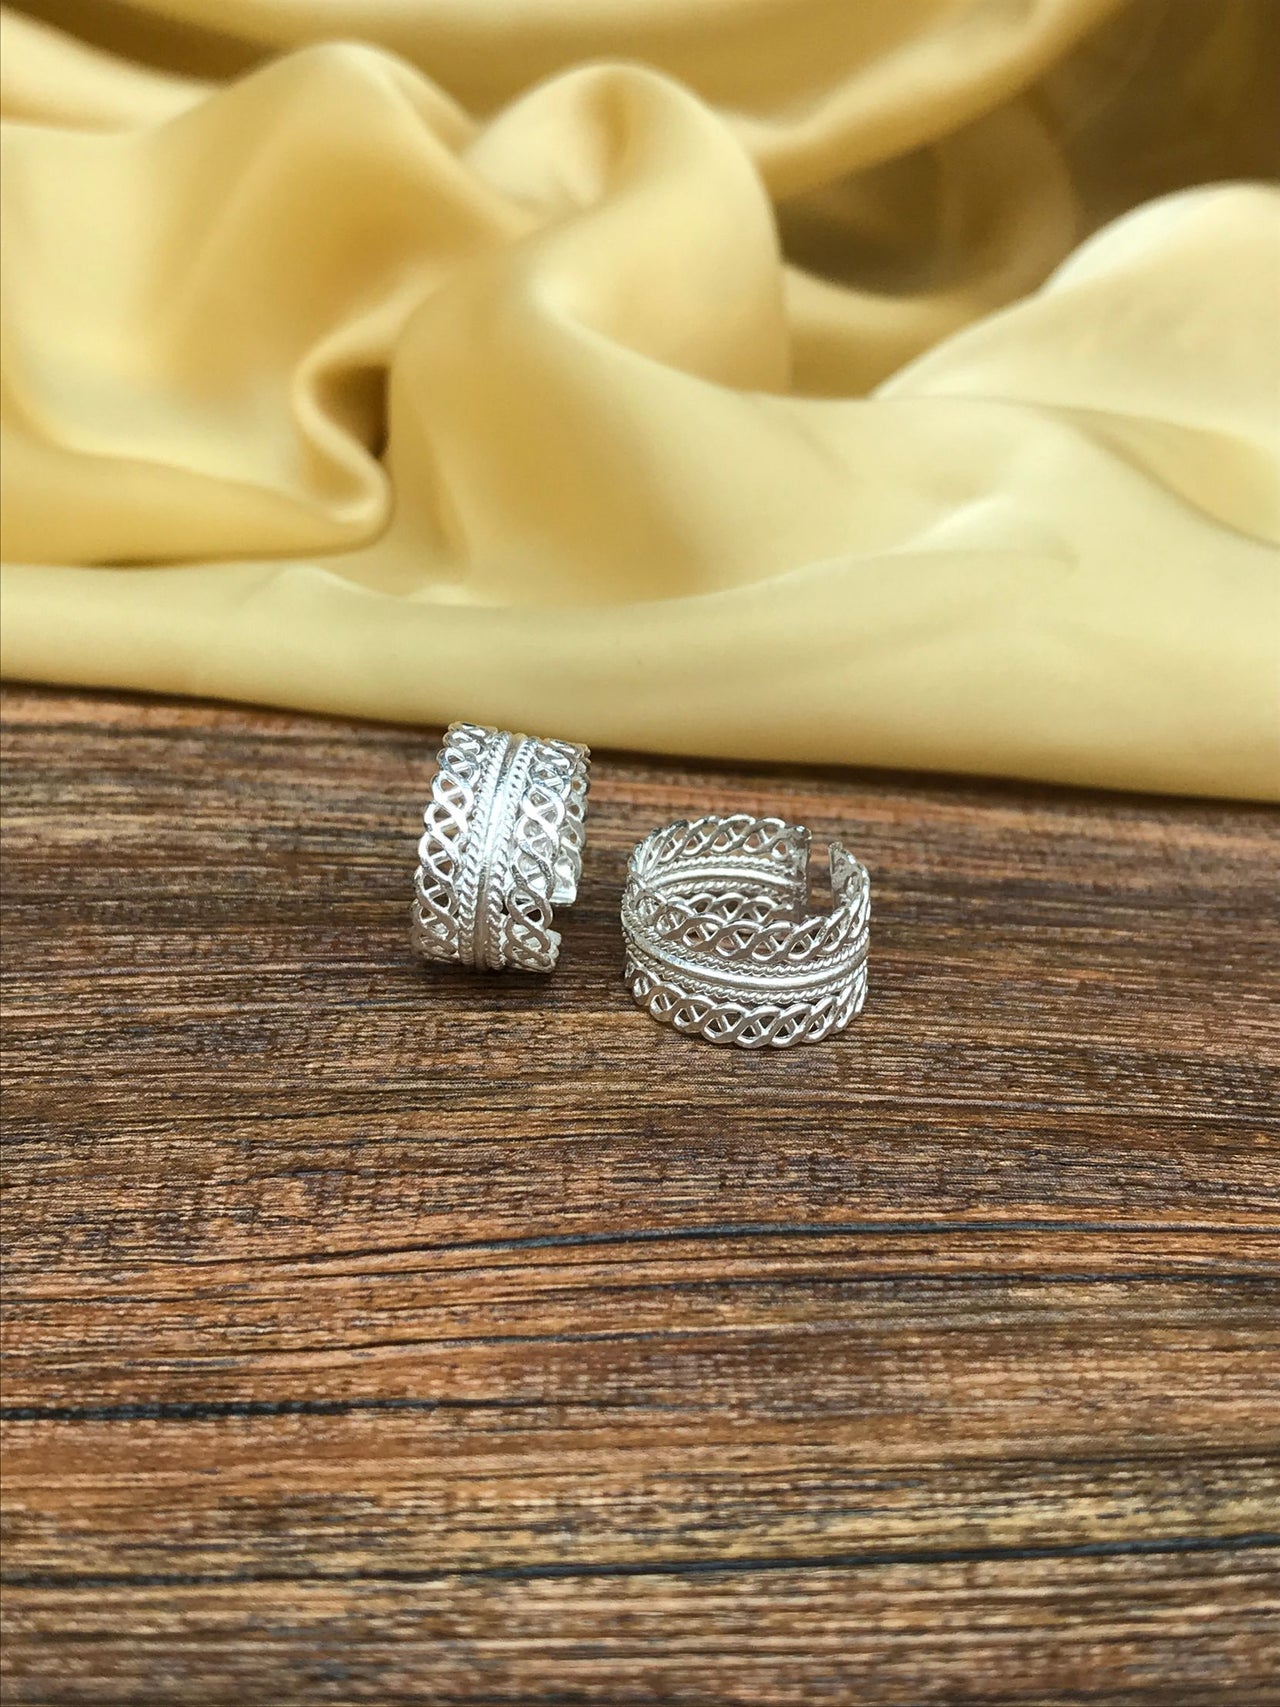 Cute Silver Pattern Toe Rings - Abdesignsjewellery